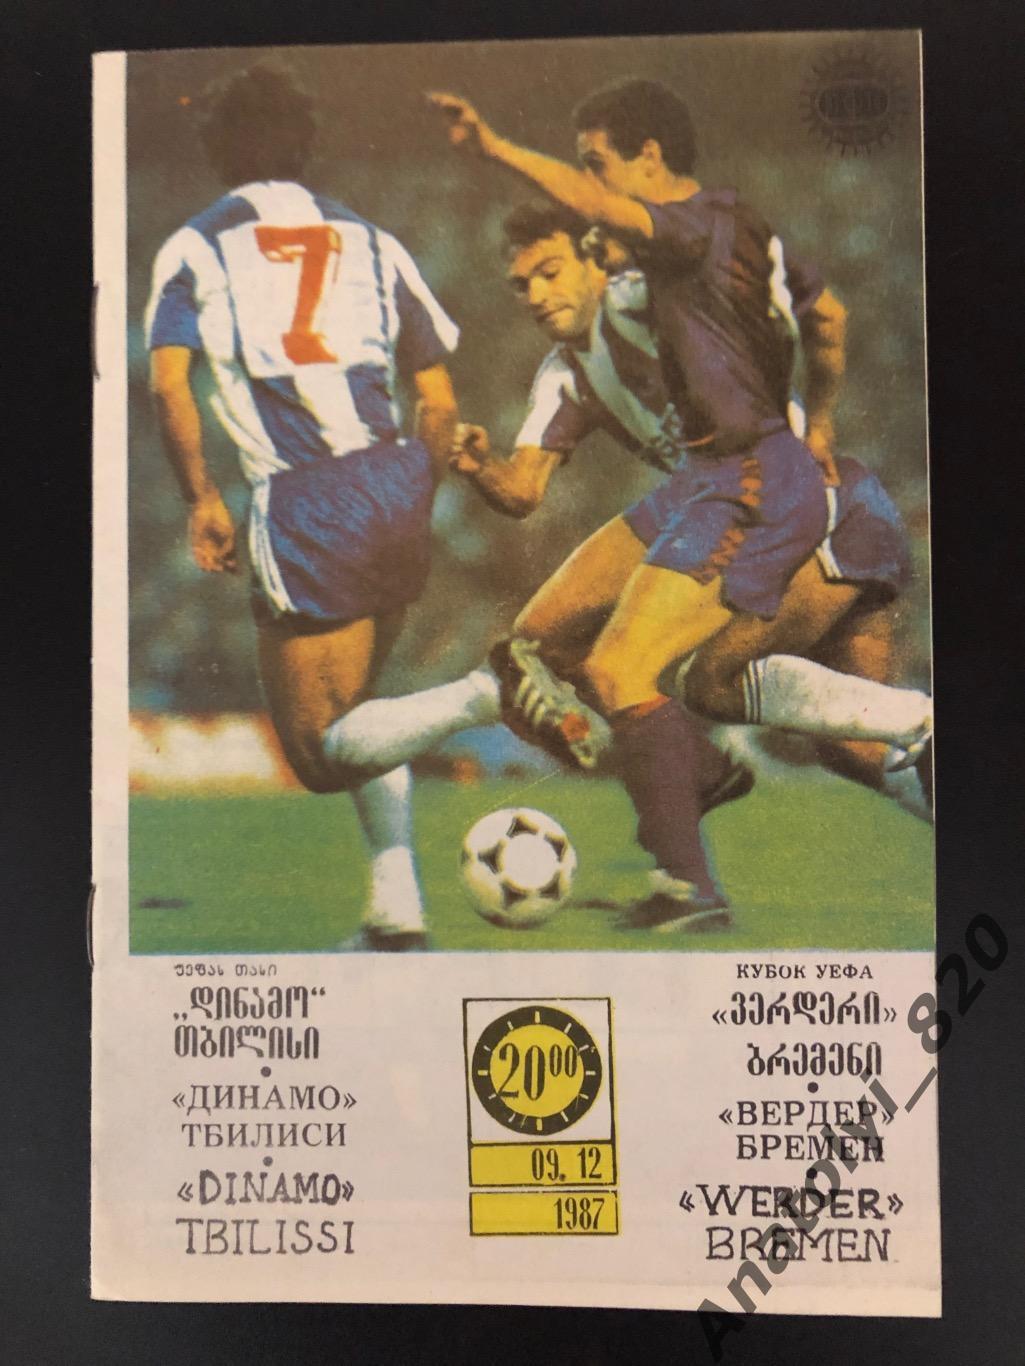 Динамо Тбилиси - Вердер Германия, 09.12.1987